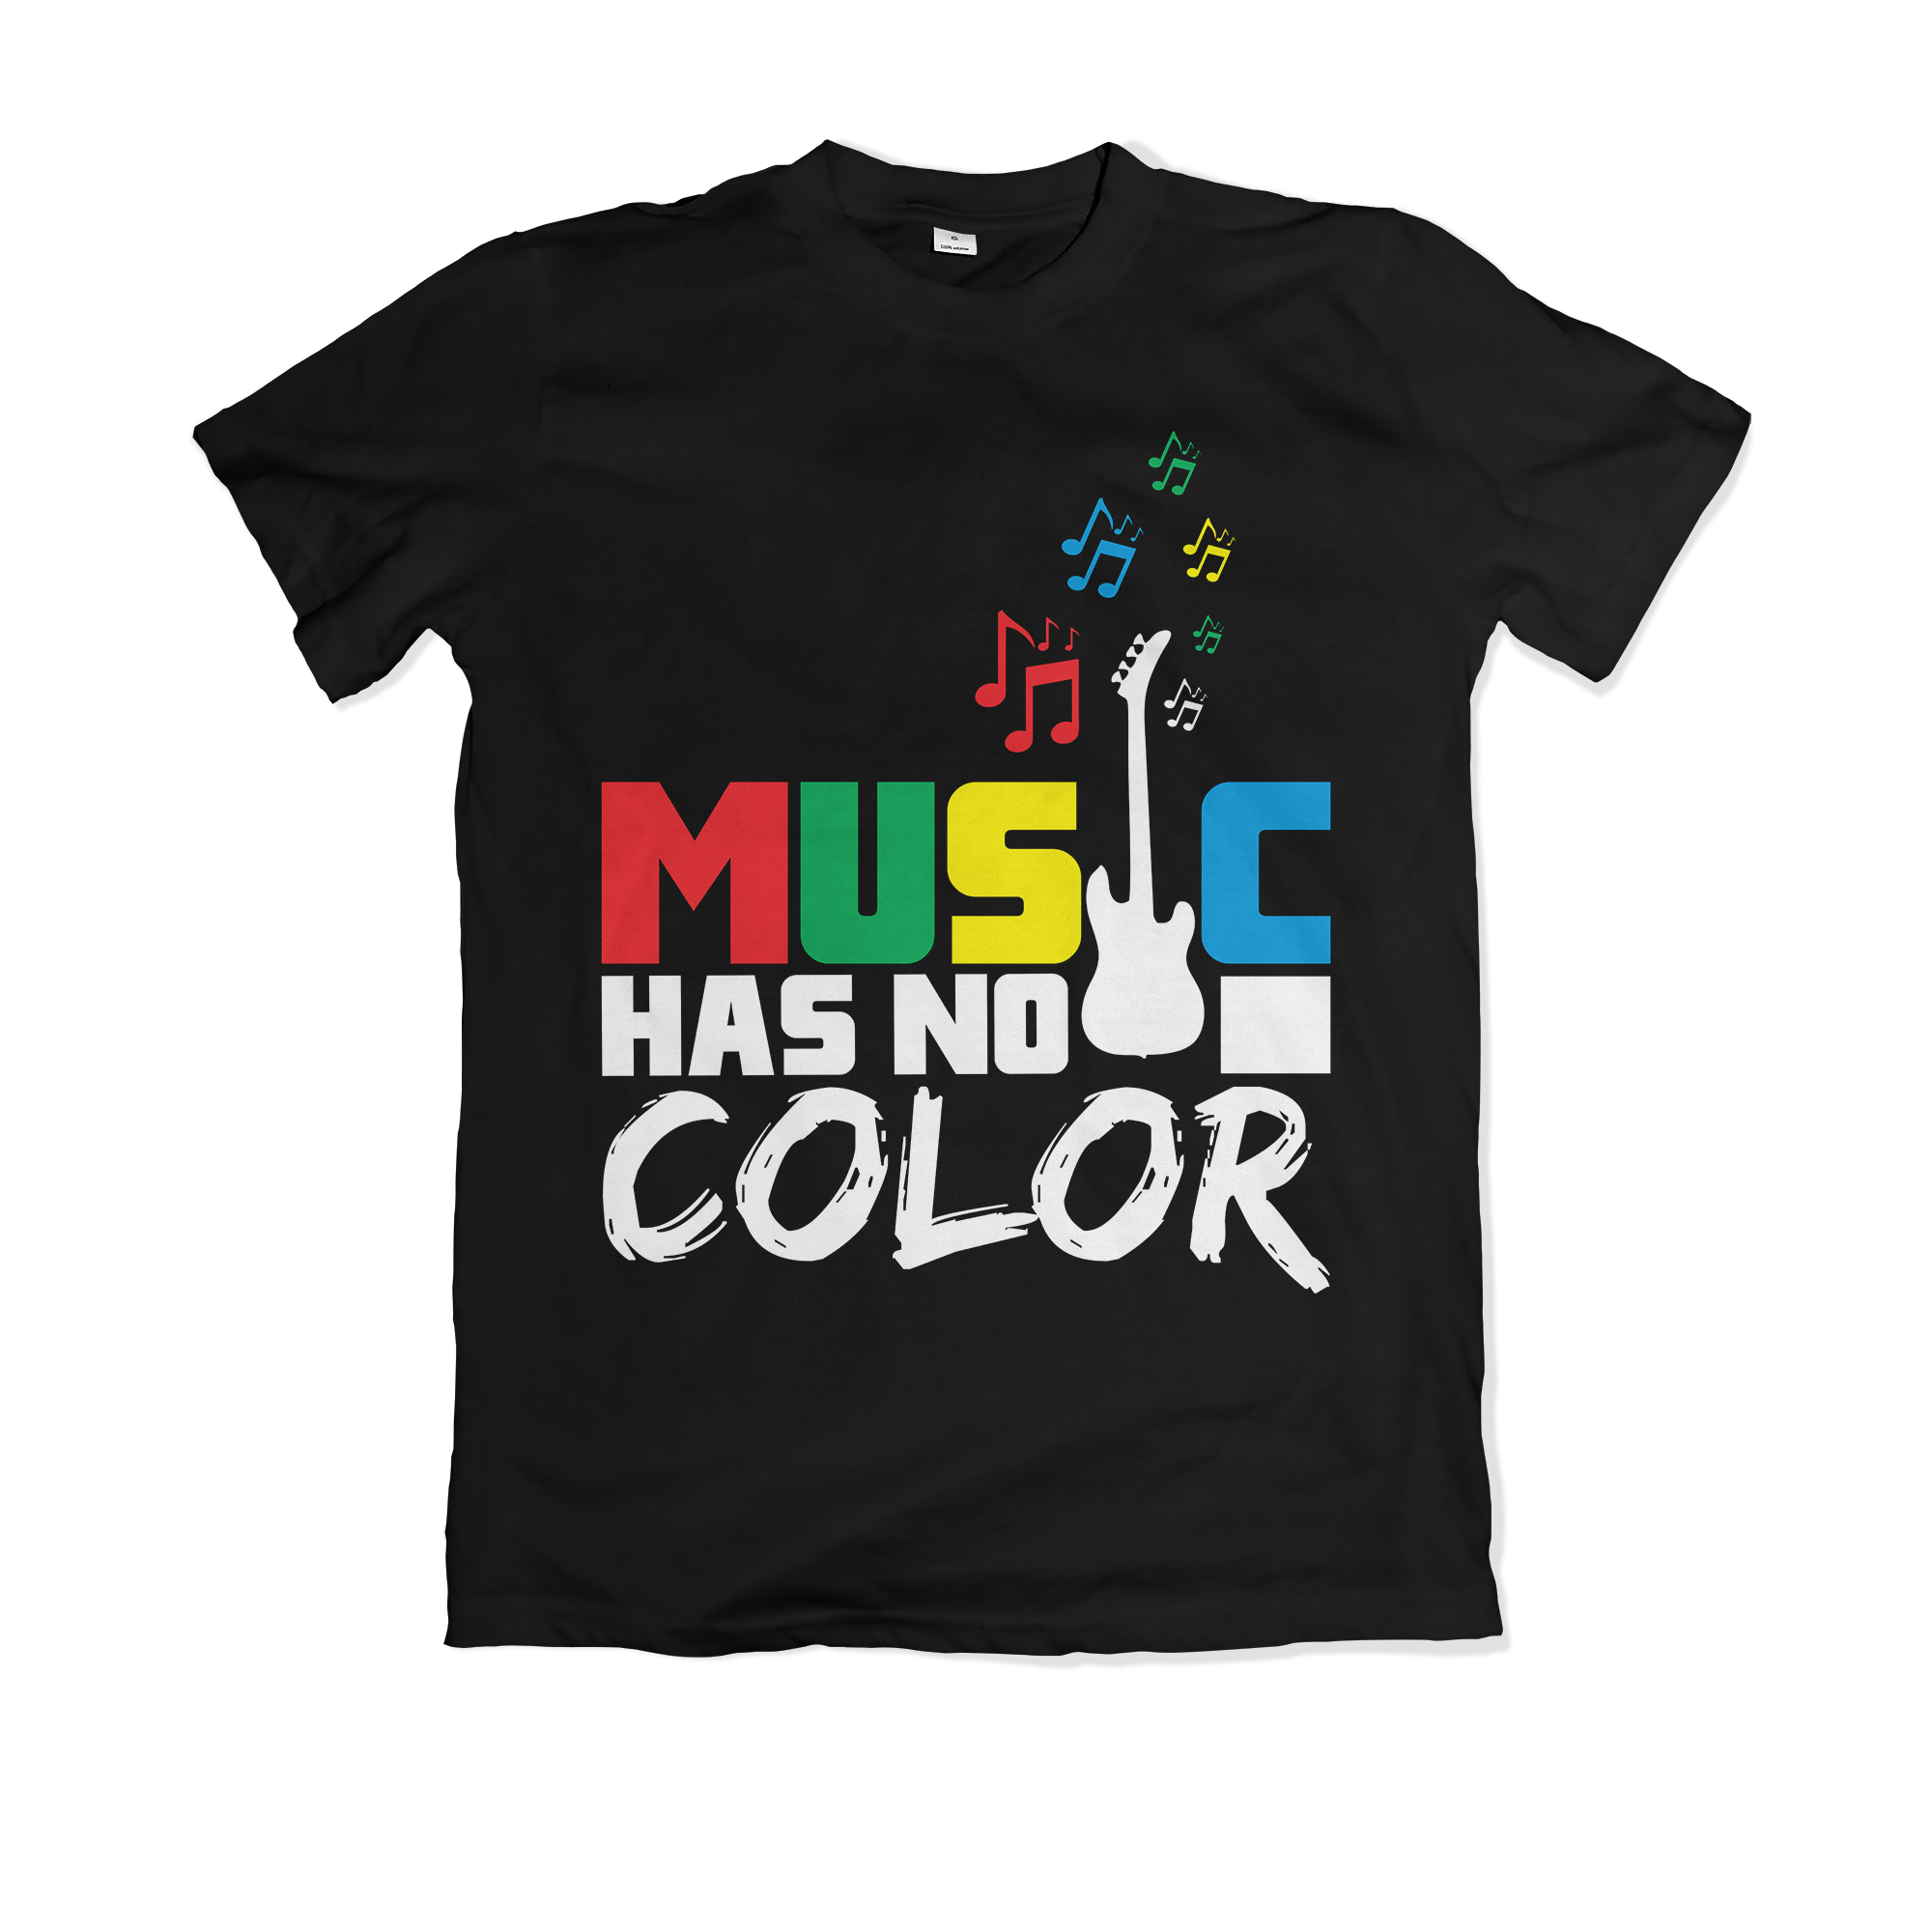 Music Has No Color - Black